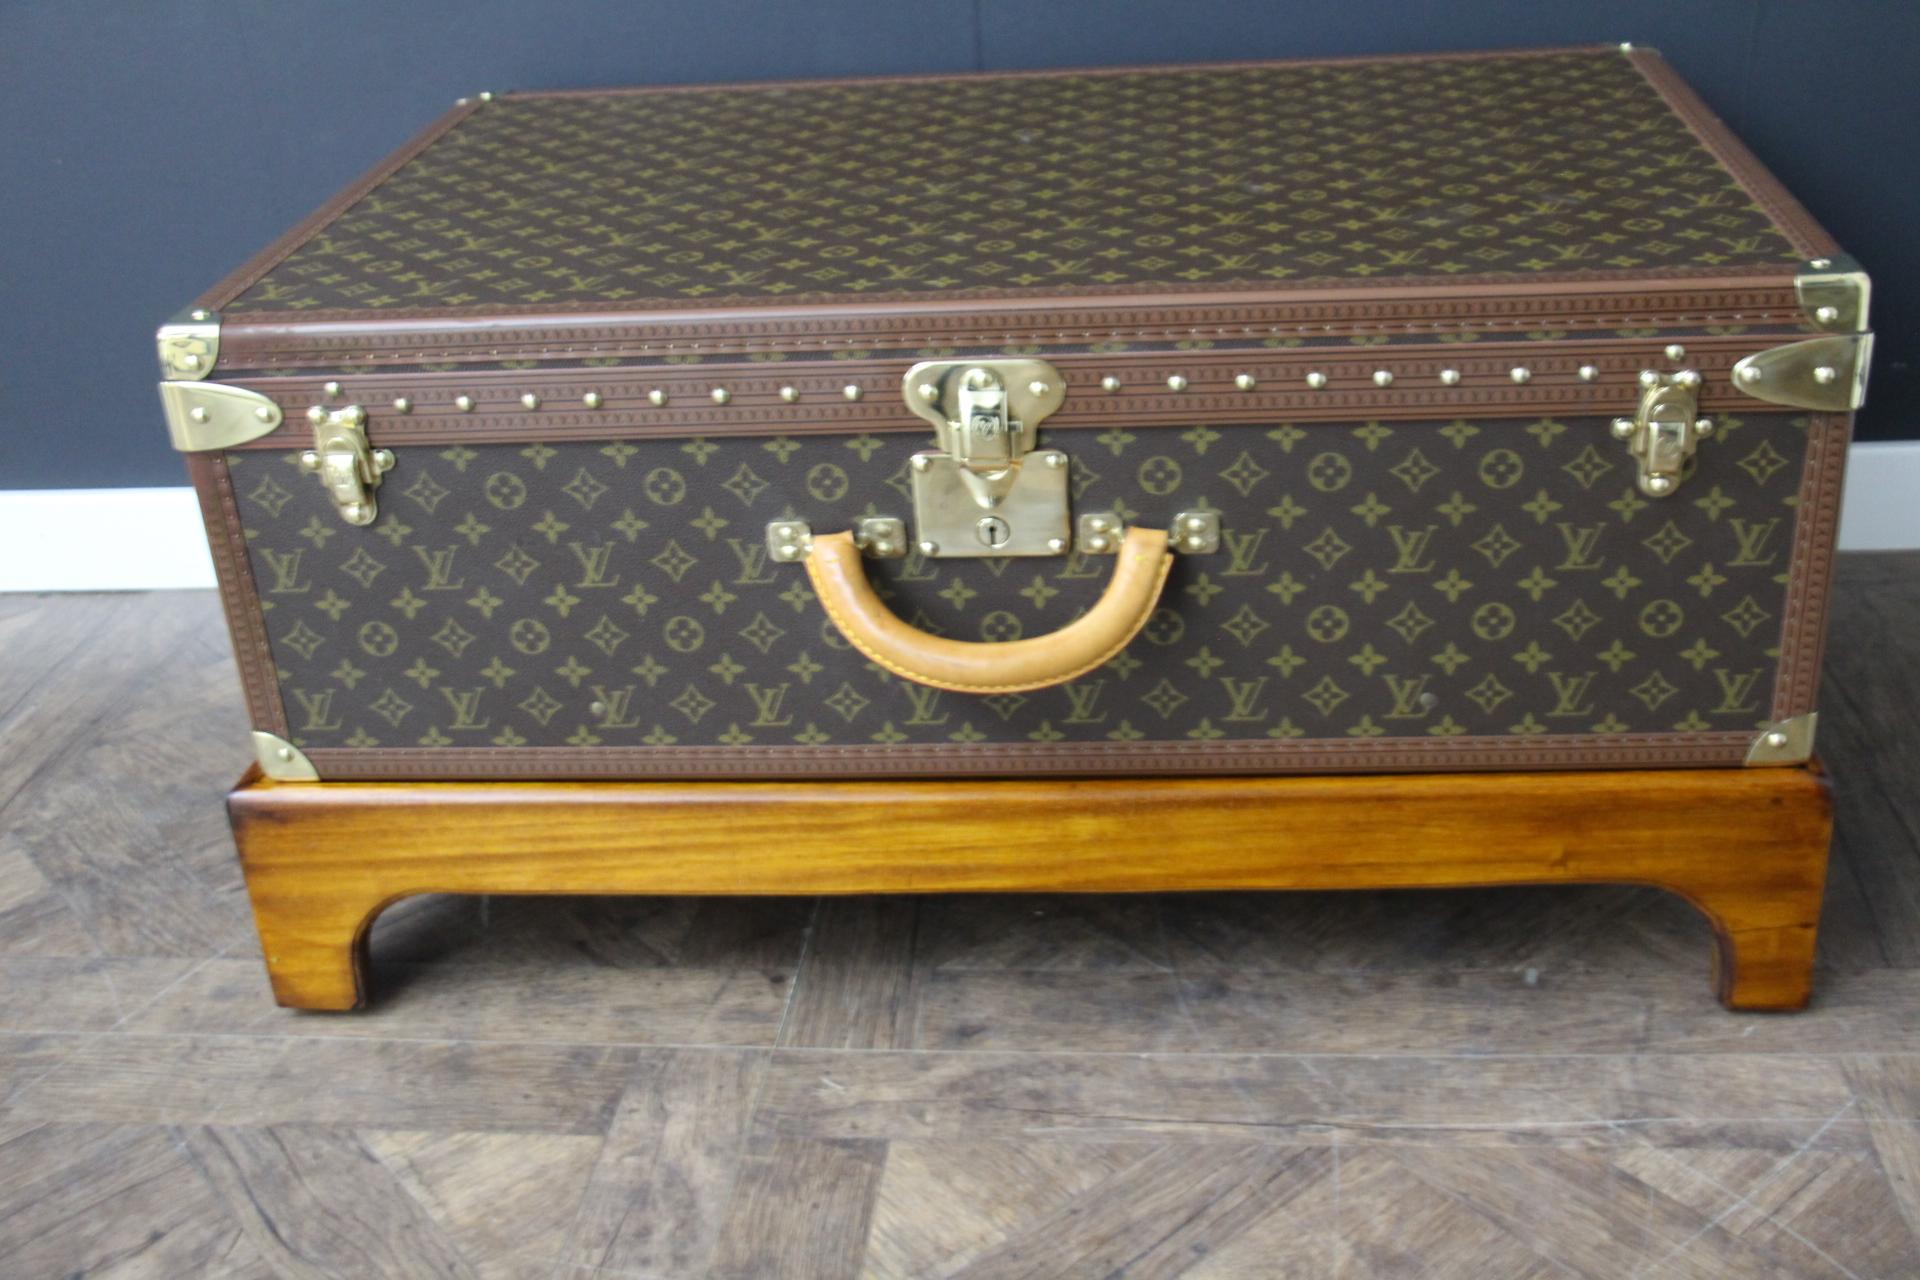 Dieses Gepäckstück ist ein prächtiger Louis Vuitton Alzer Monogramm-Koffer. Dieser 80 cm große Koffer ist der größte und luxuriöseste Koffer von Louis Vuitton. Sie verfügt über alle Louis Vuitton Beschläge aus massivem Messing: Schlösser,